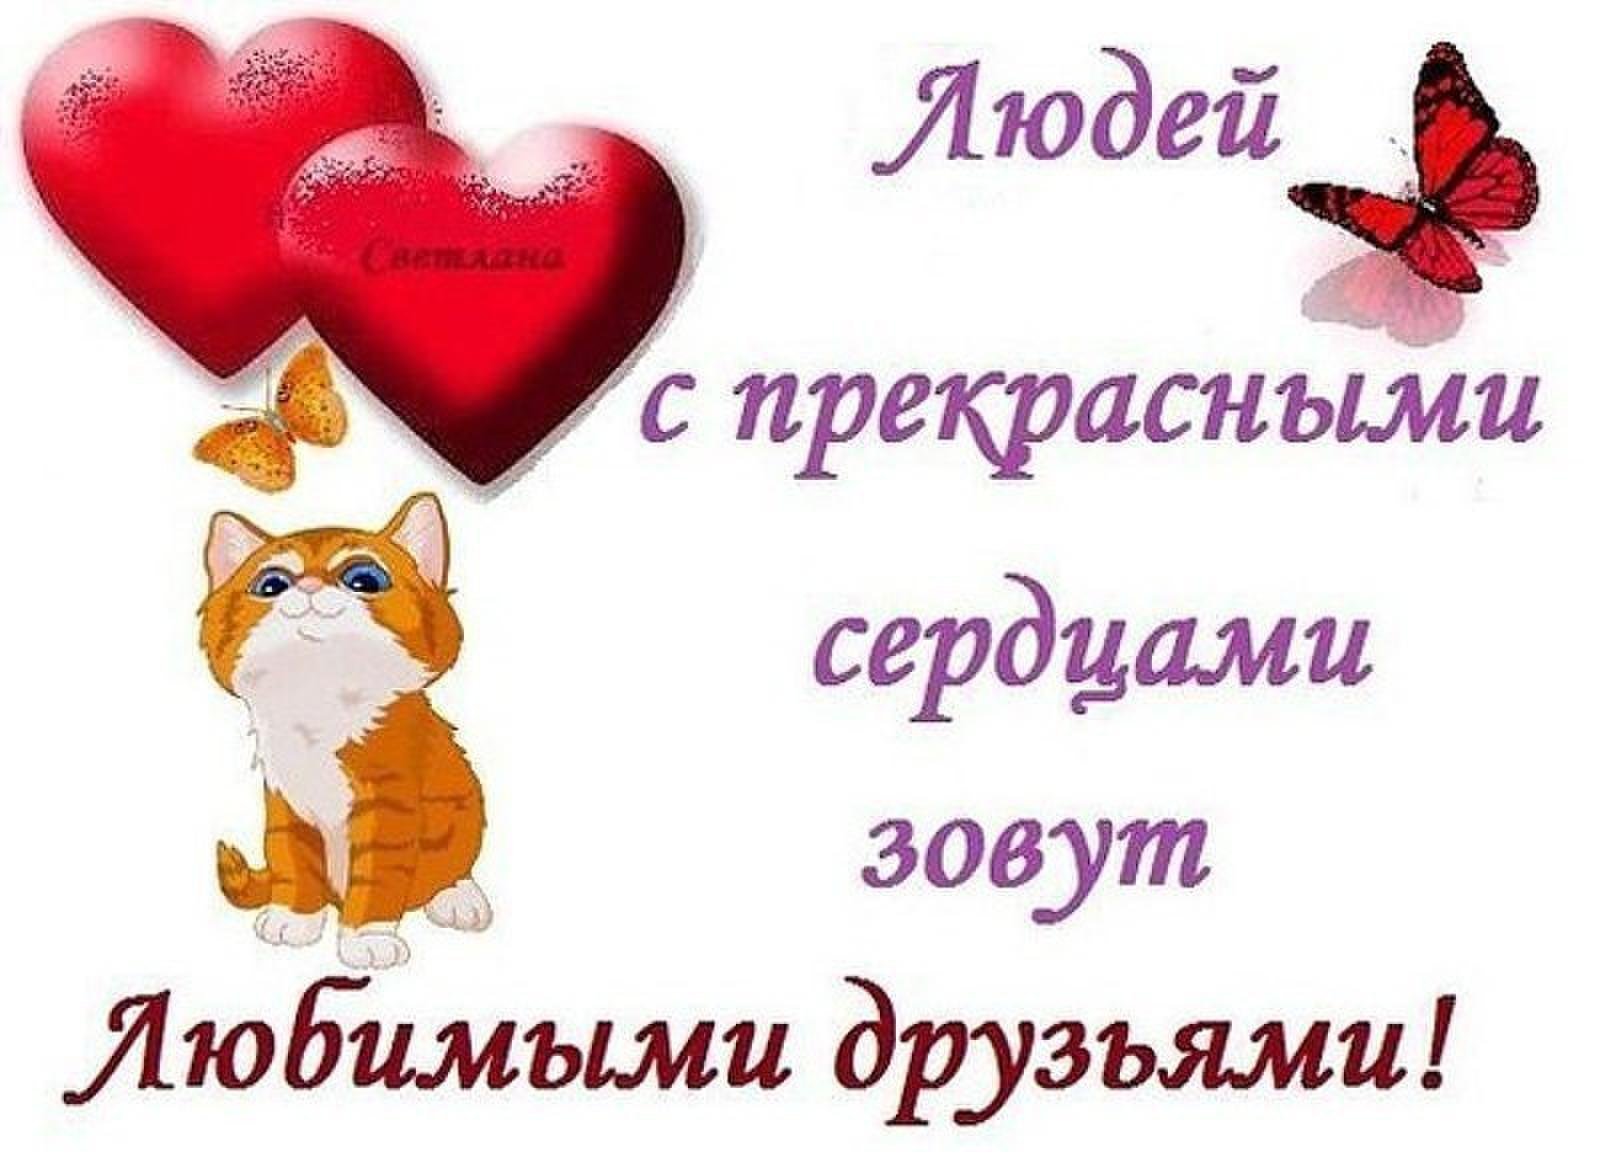 Мой любимый друг россия. Открытка любимому другу. Открытка для любимого друга. Людей с прекрасными сердцами зовут любимыми друзьями. Открытки любимым друзьям.